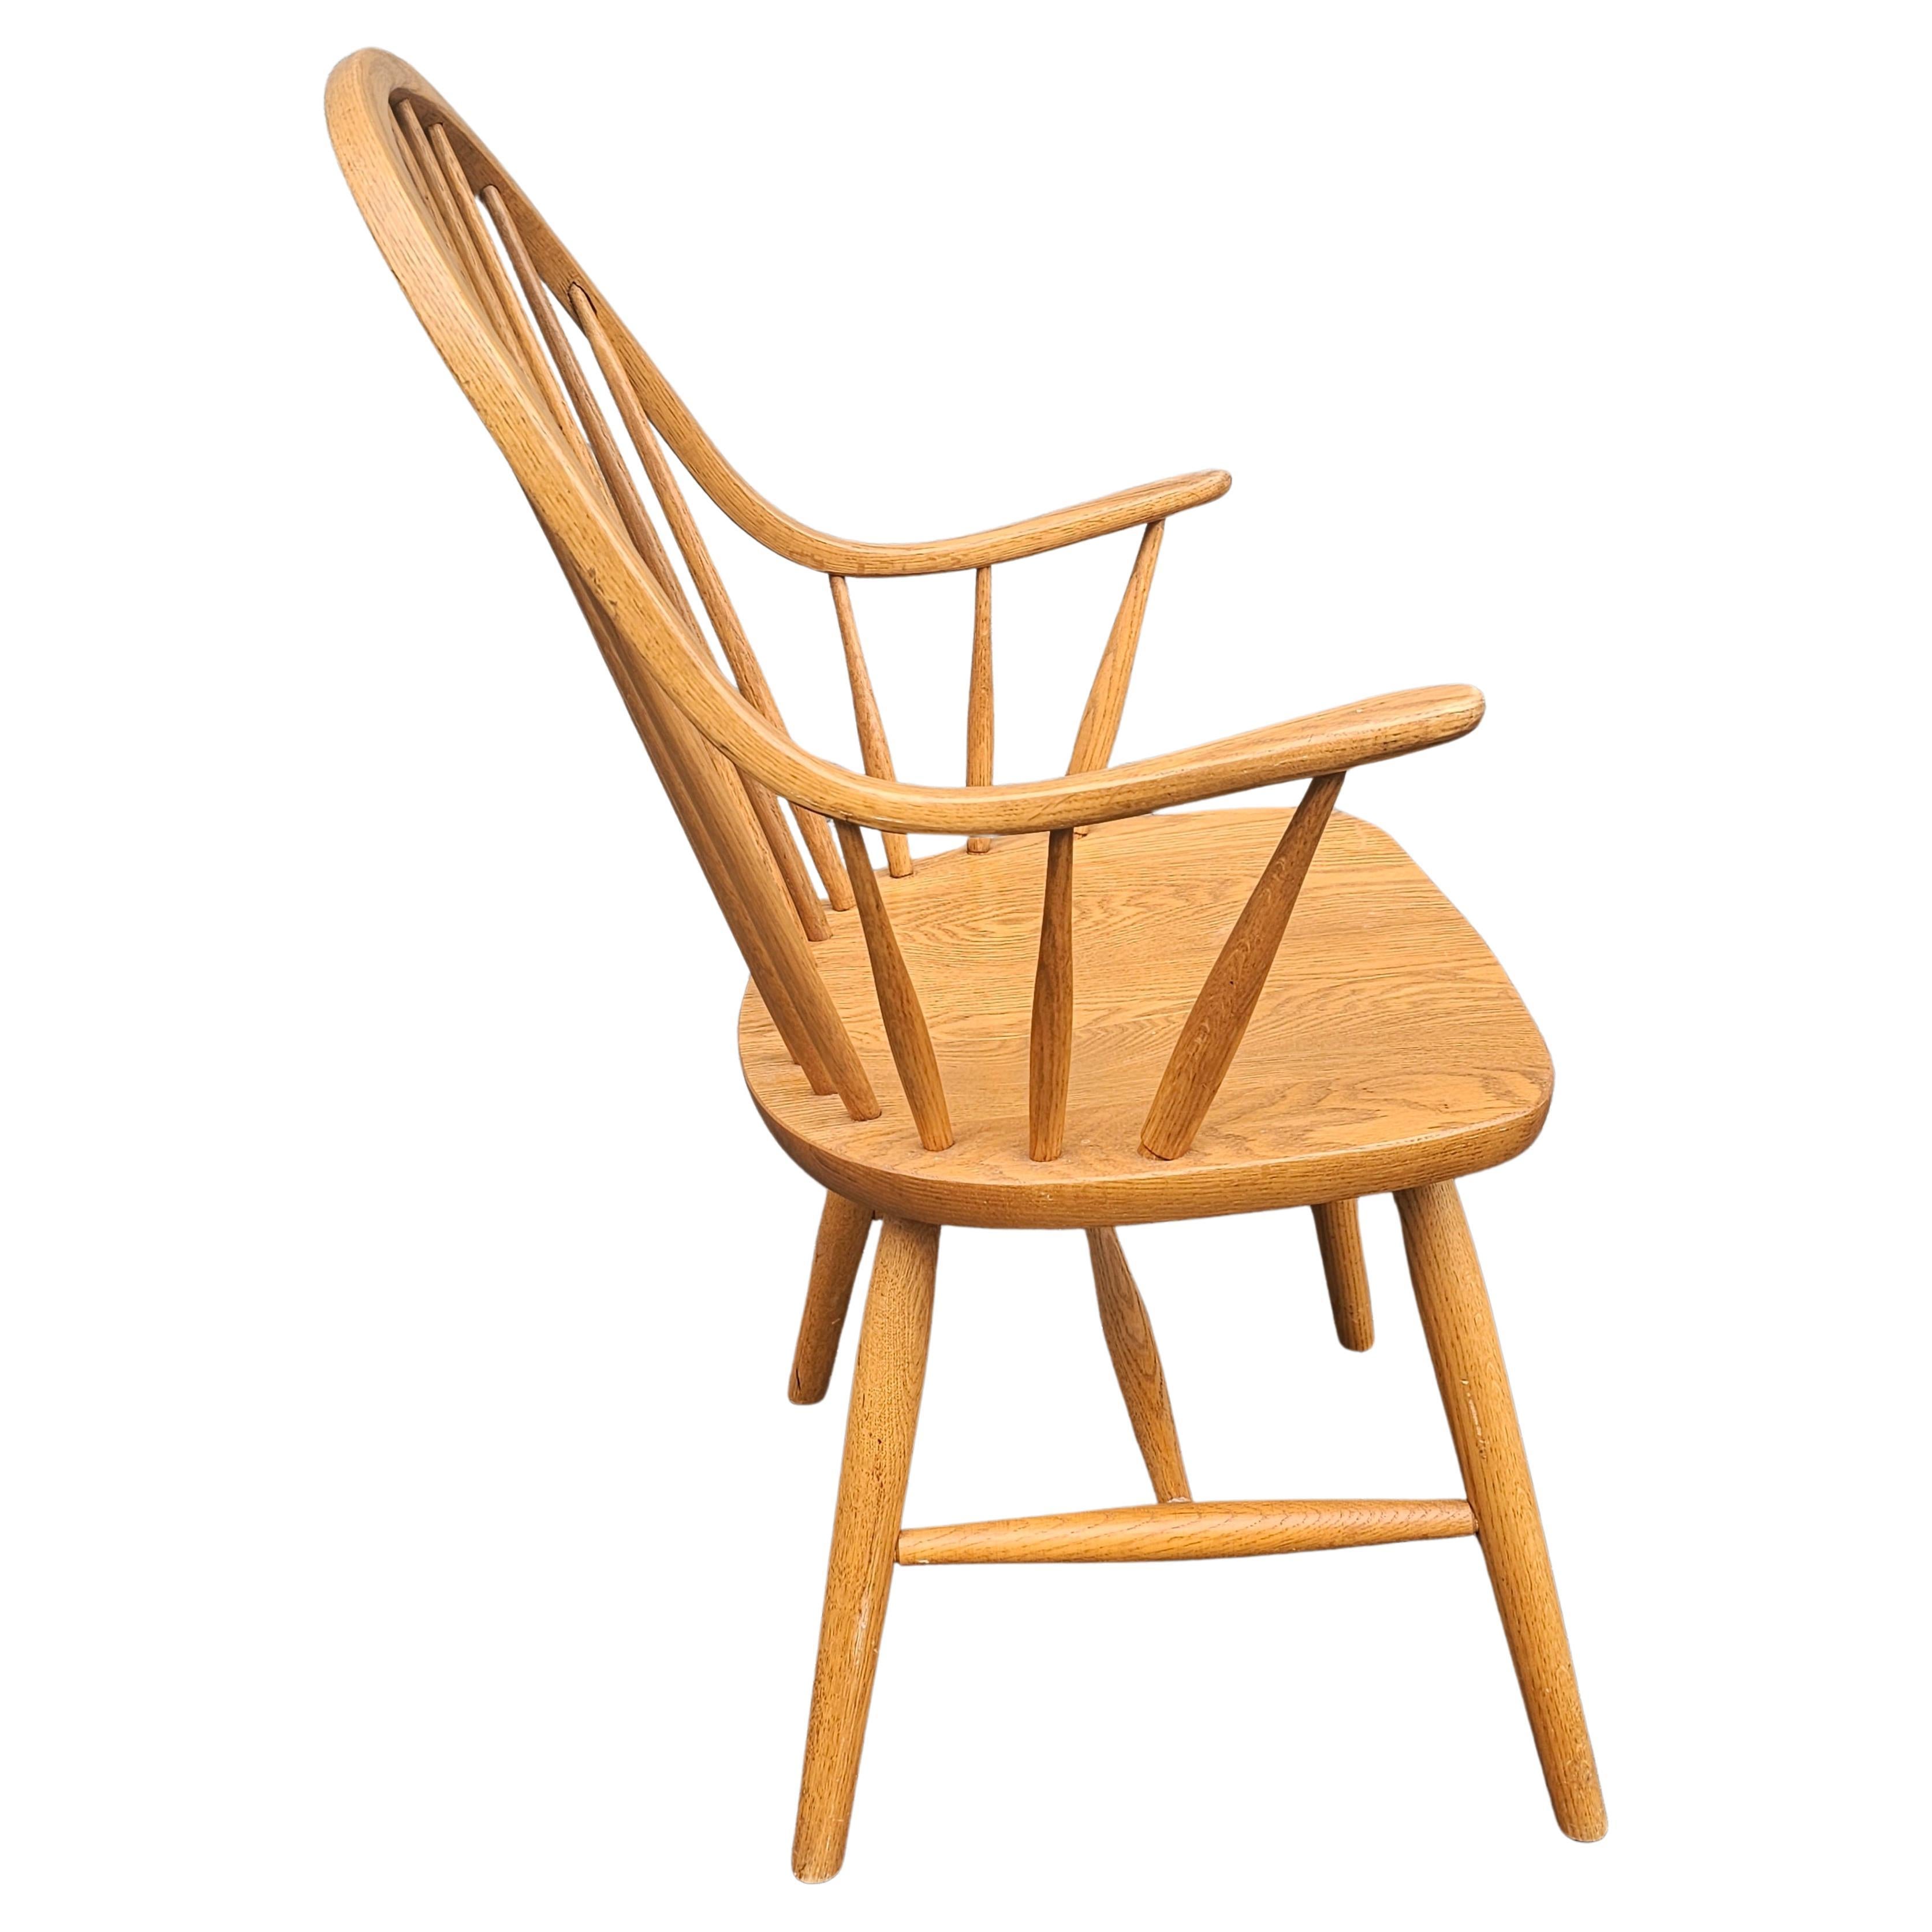 Ein Ende des 20. Jahrhunderts Amish gefertigte Eiche Continuous Windsor Sessel mit Spindel zurück. Eine wahre Definition von Eleganz und Schlichtheit. Maße: 23,25